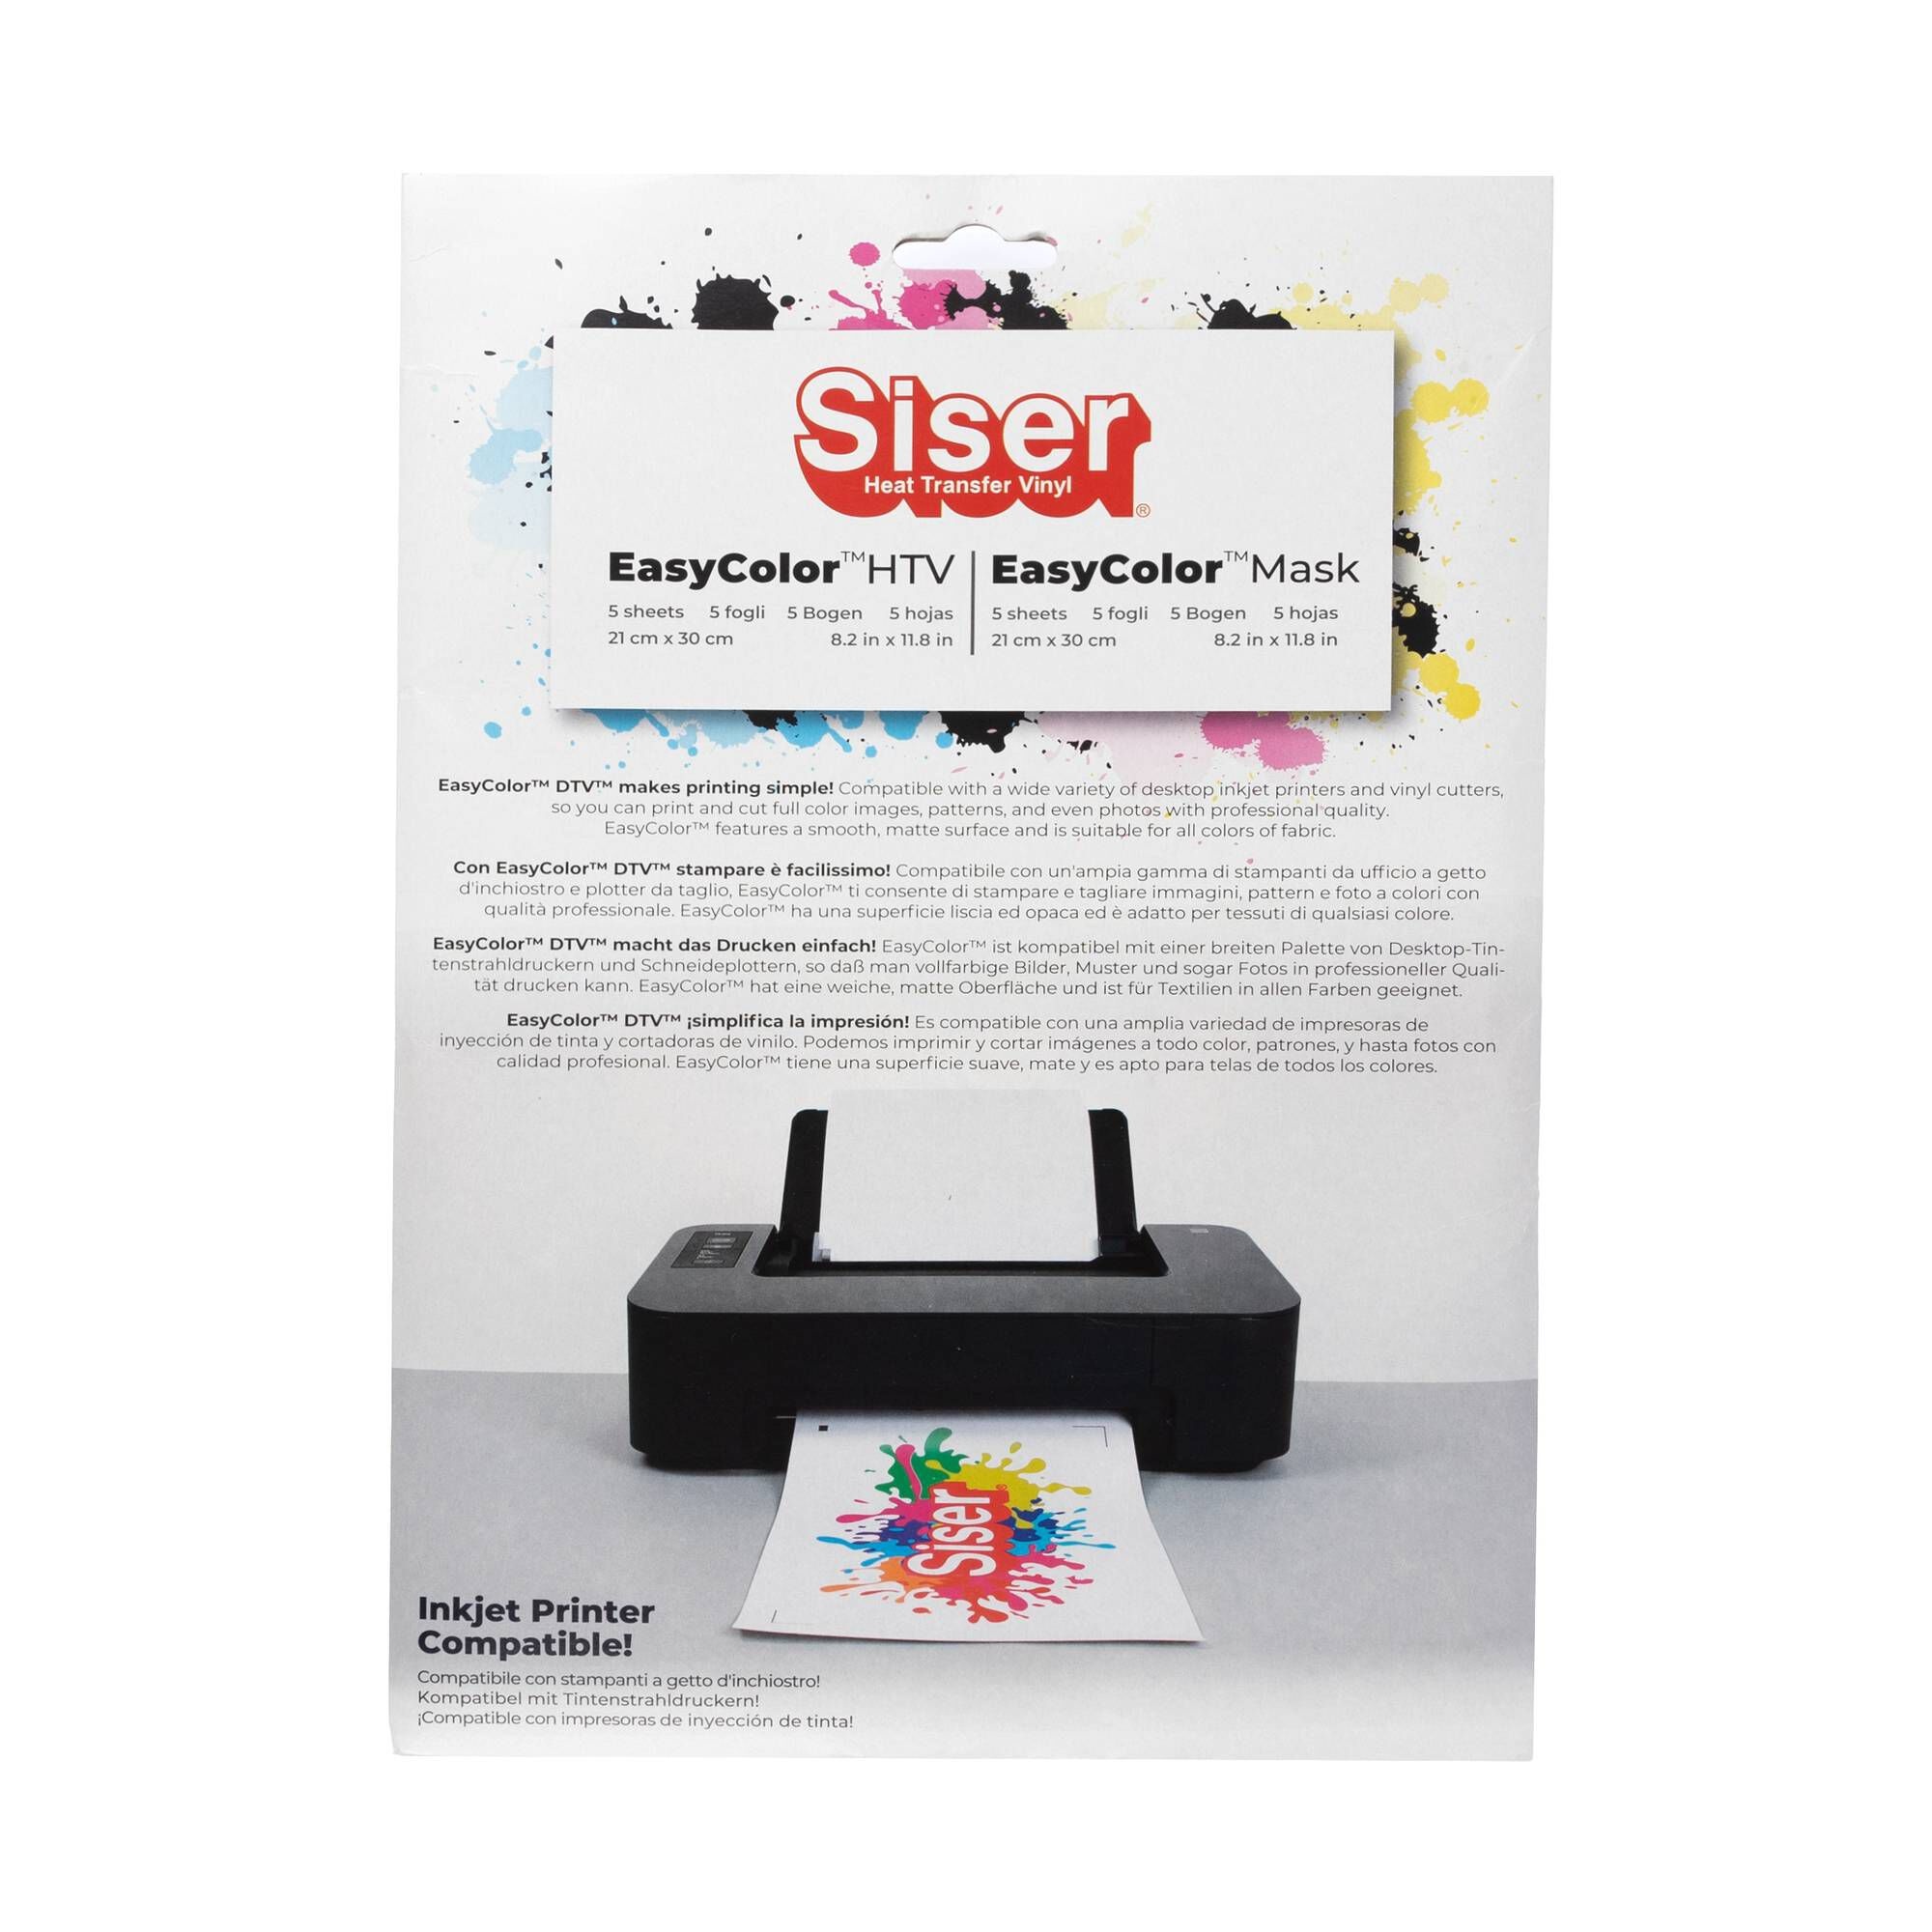 Siser EasyColor DTV (5 Pack)